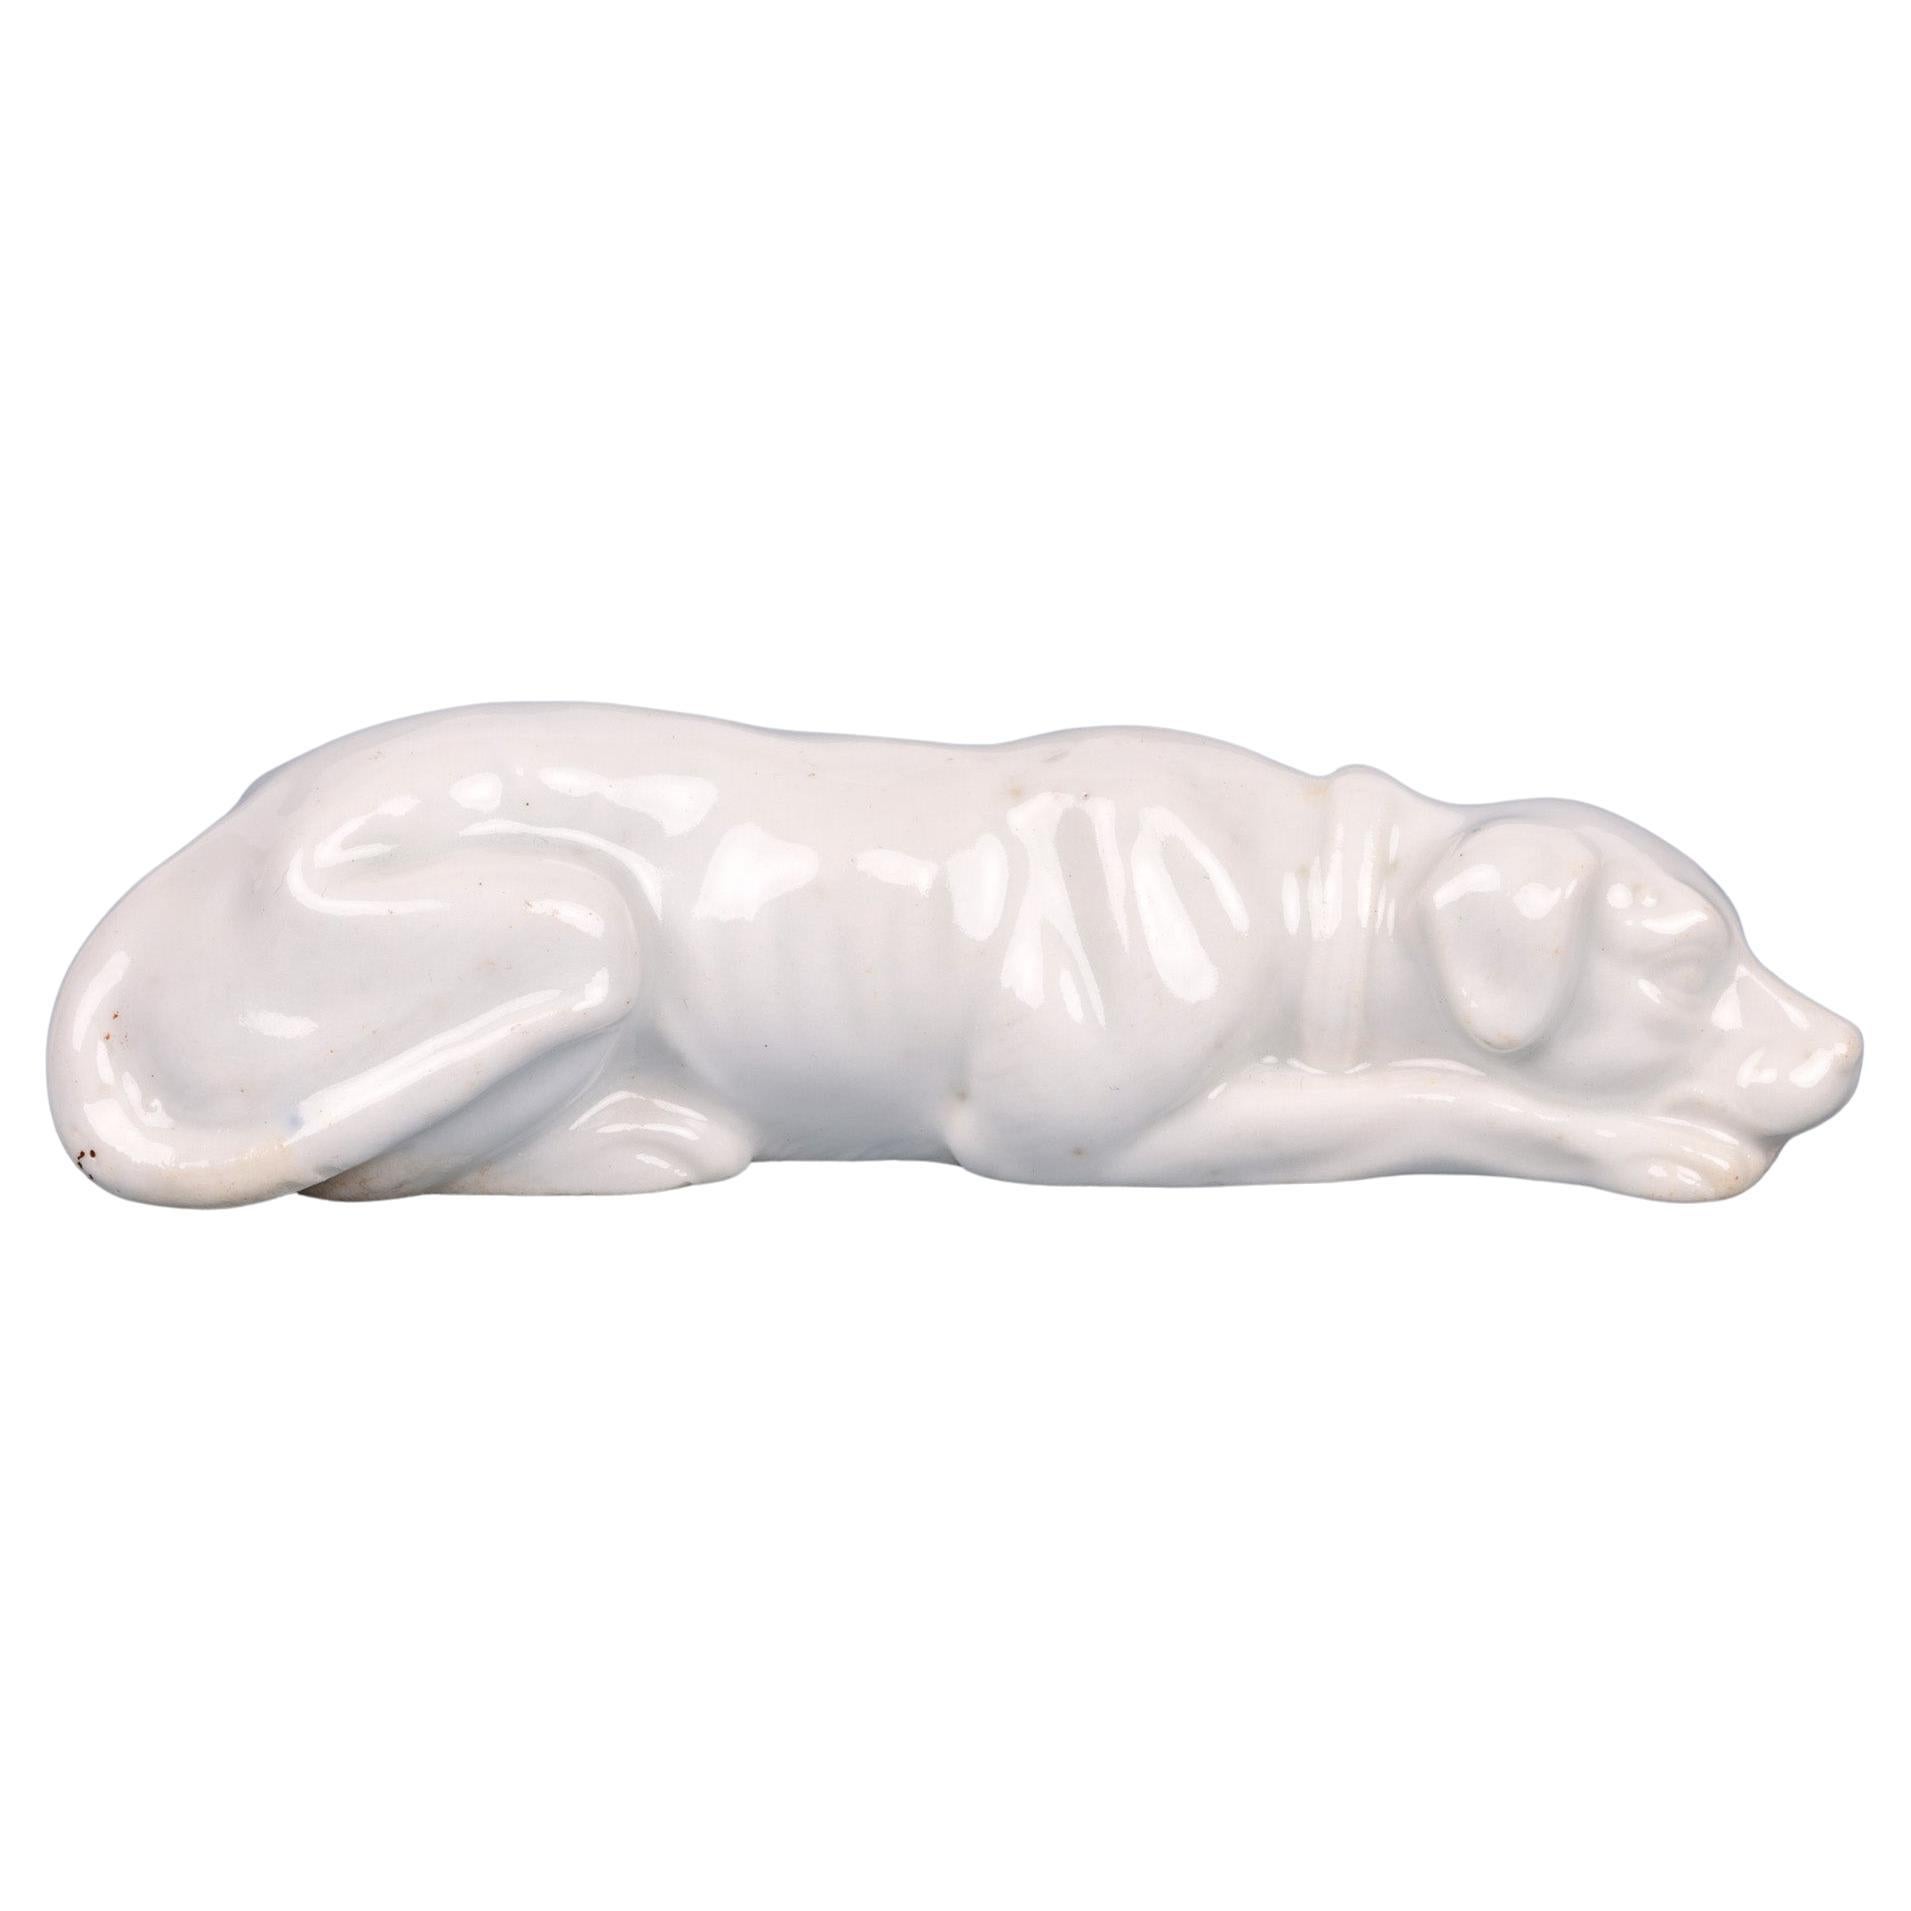 Antike weiß glasierte Porzellanfigur eines liegenden Hundes